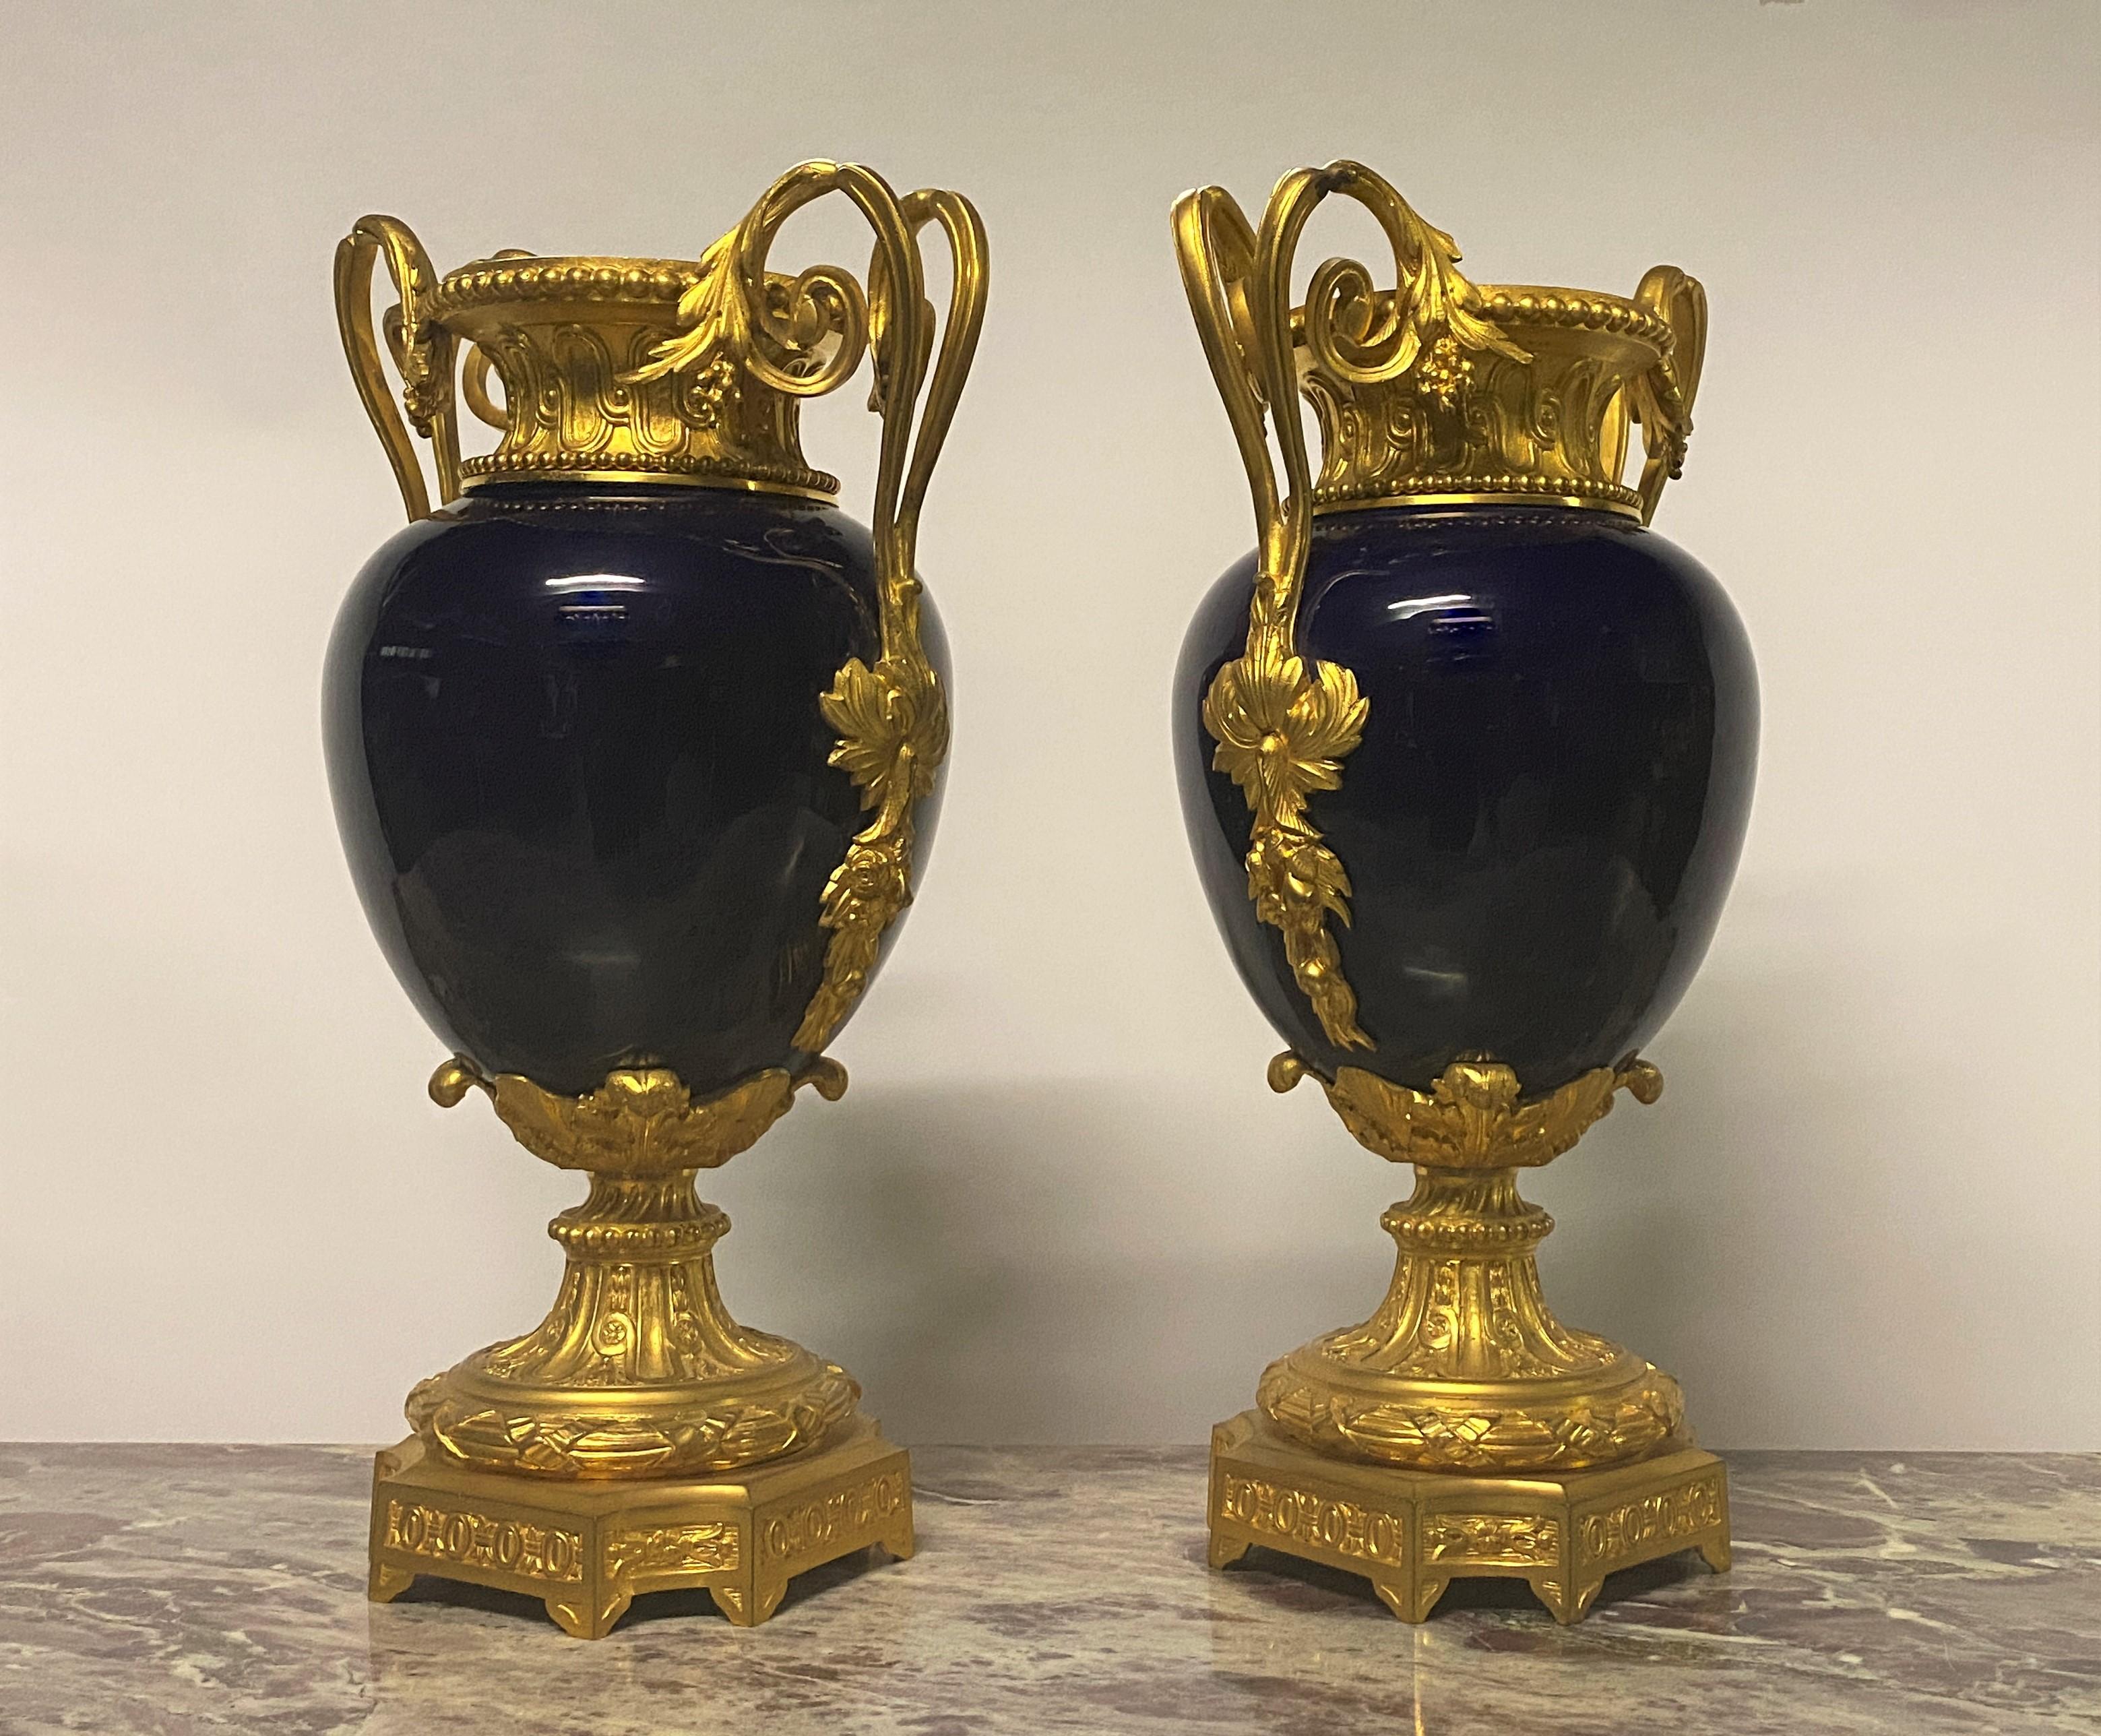 Dieses Vasenpaar ist sehr dekorativ und von guter Qualität. Das Porzellan ist tiefblau emailliert, der Rahmen ist aus vergoldeter Bronze von feiner Qualität und einer schönen Vergoldung, die sehr gut mit dem Blau des Balusters harmoniert. Auch diese